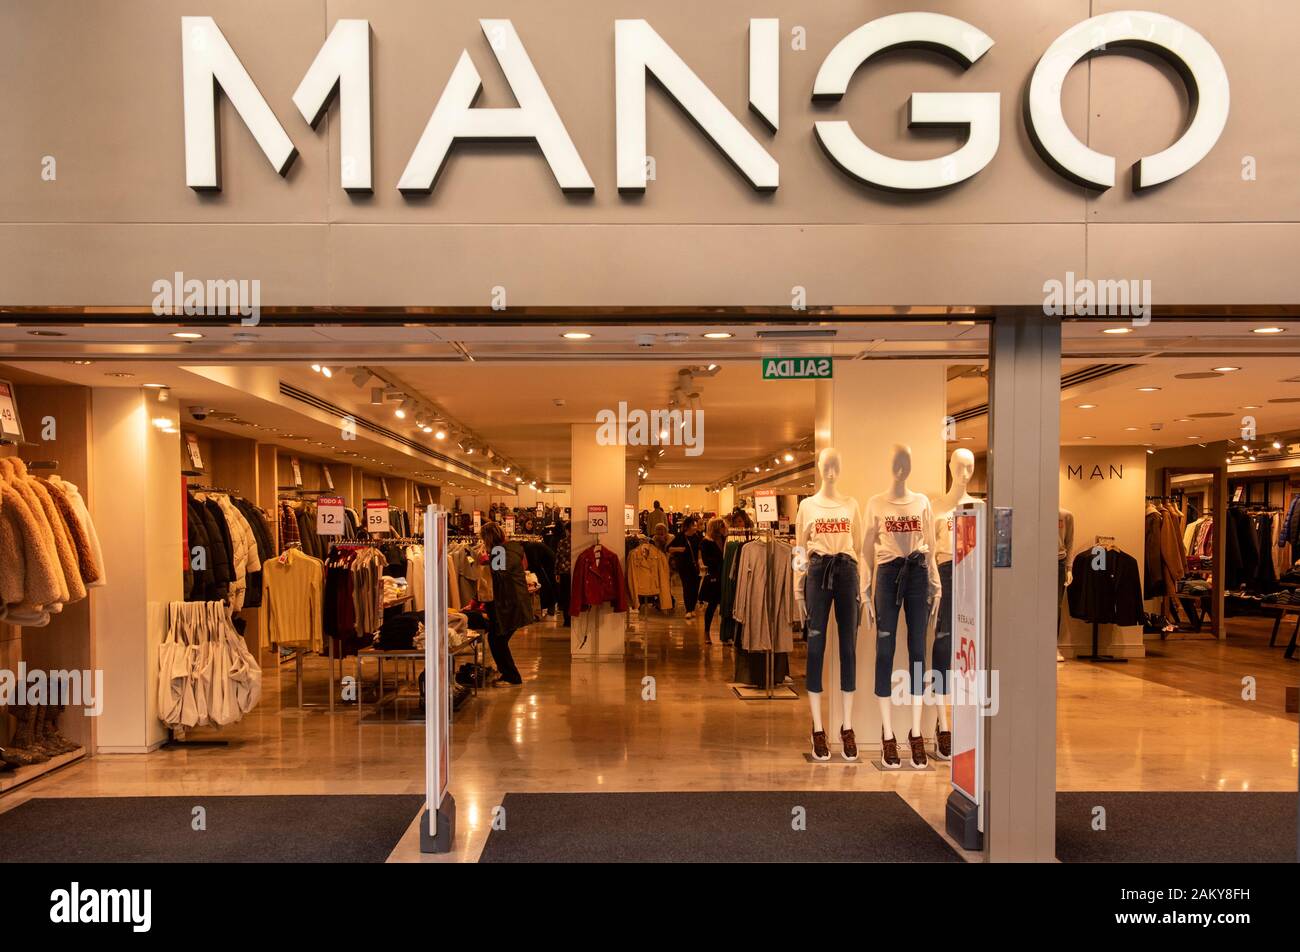 Marque de vêtements multinationale espagnole Mango boutique en Espagne  Photo Stock - Alamy